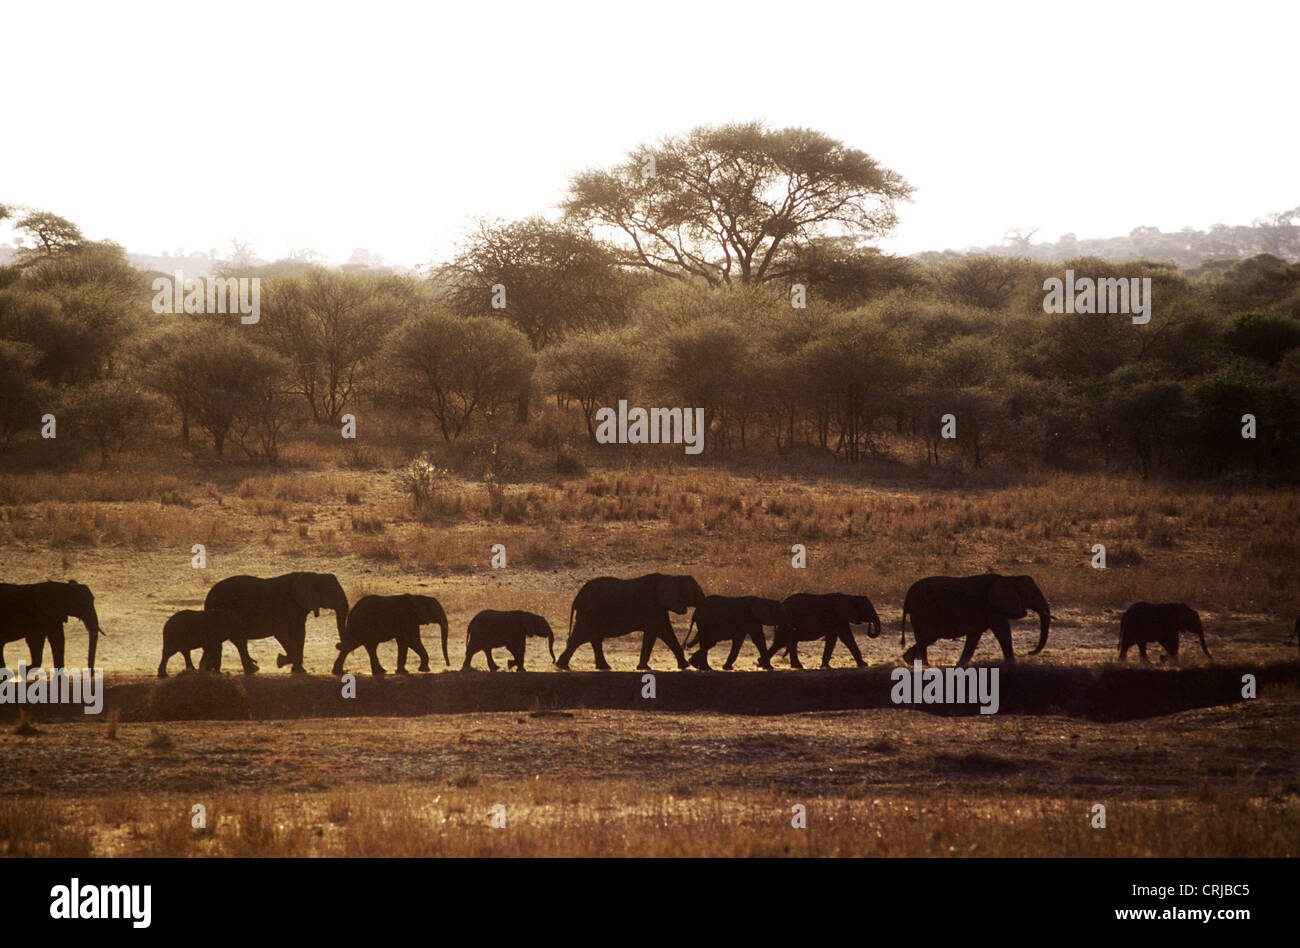 Elephants in line silhouette trekking towards water raise dust as they ...